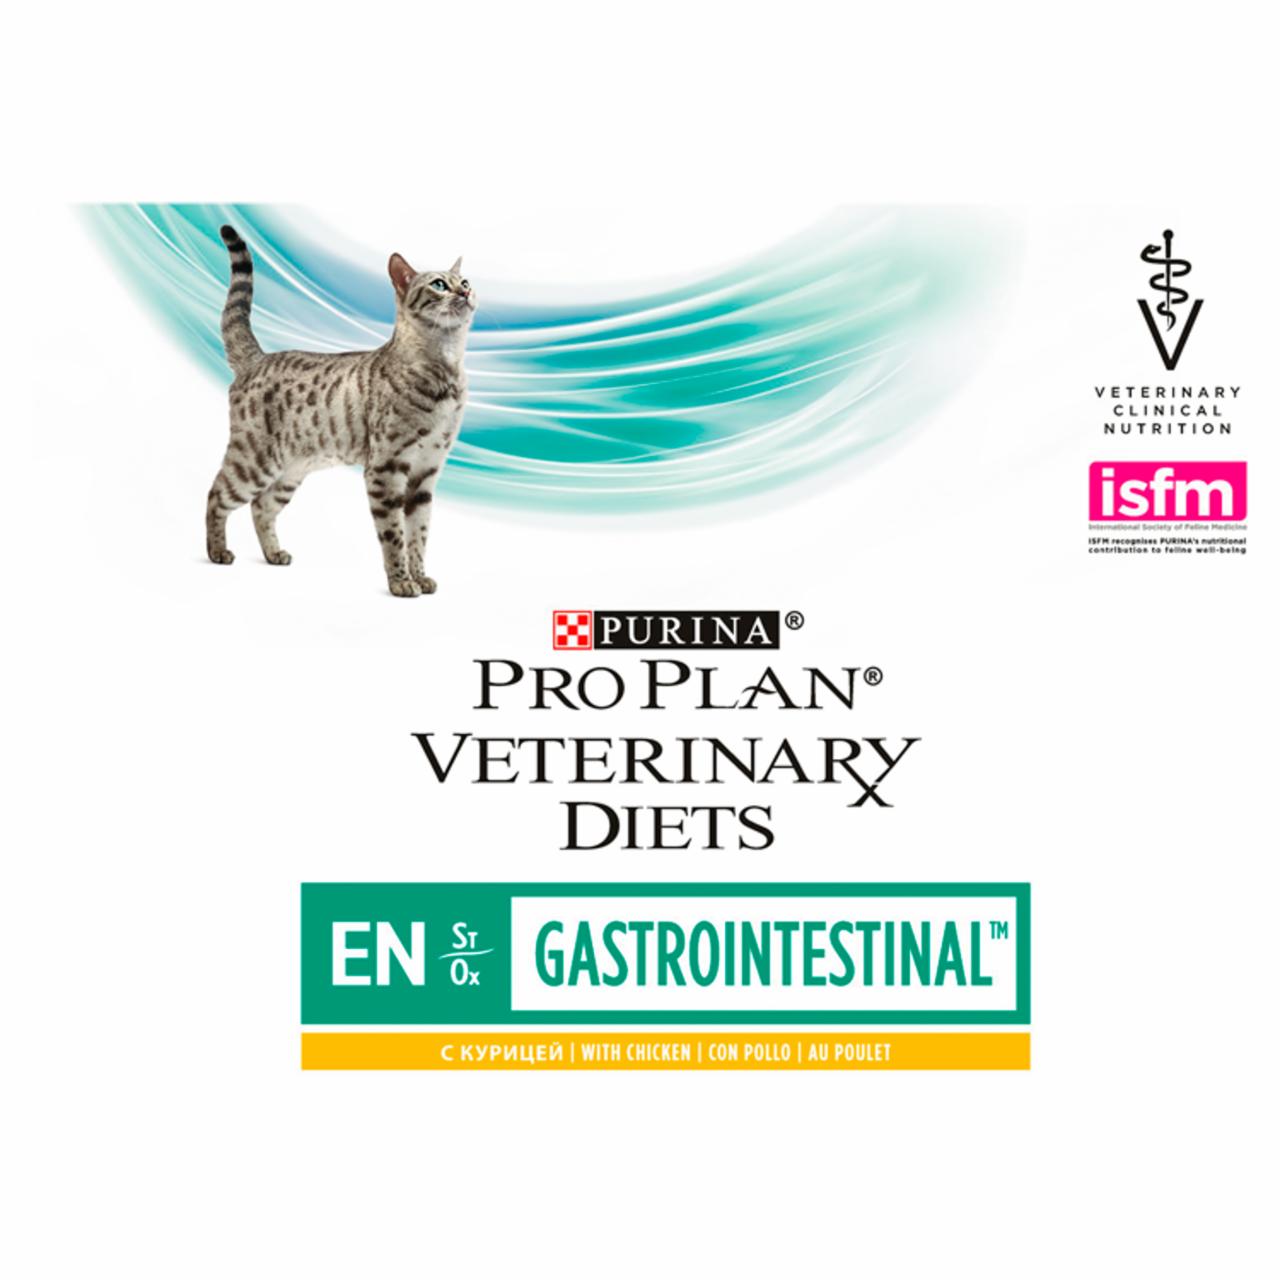 Zdjęcia - PRO PLAN Veterinary Diets EN St/Ox Gastrointestinal Karma dla kotów 10 x 85 g